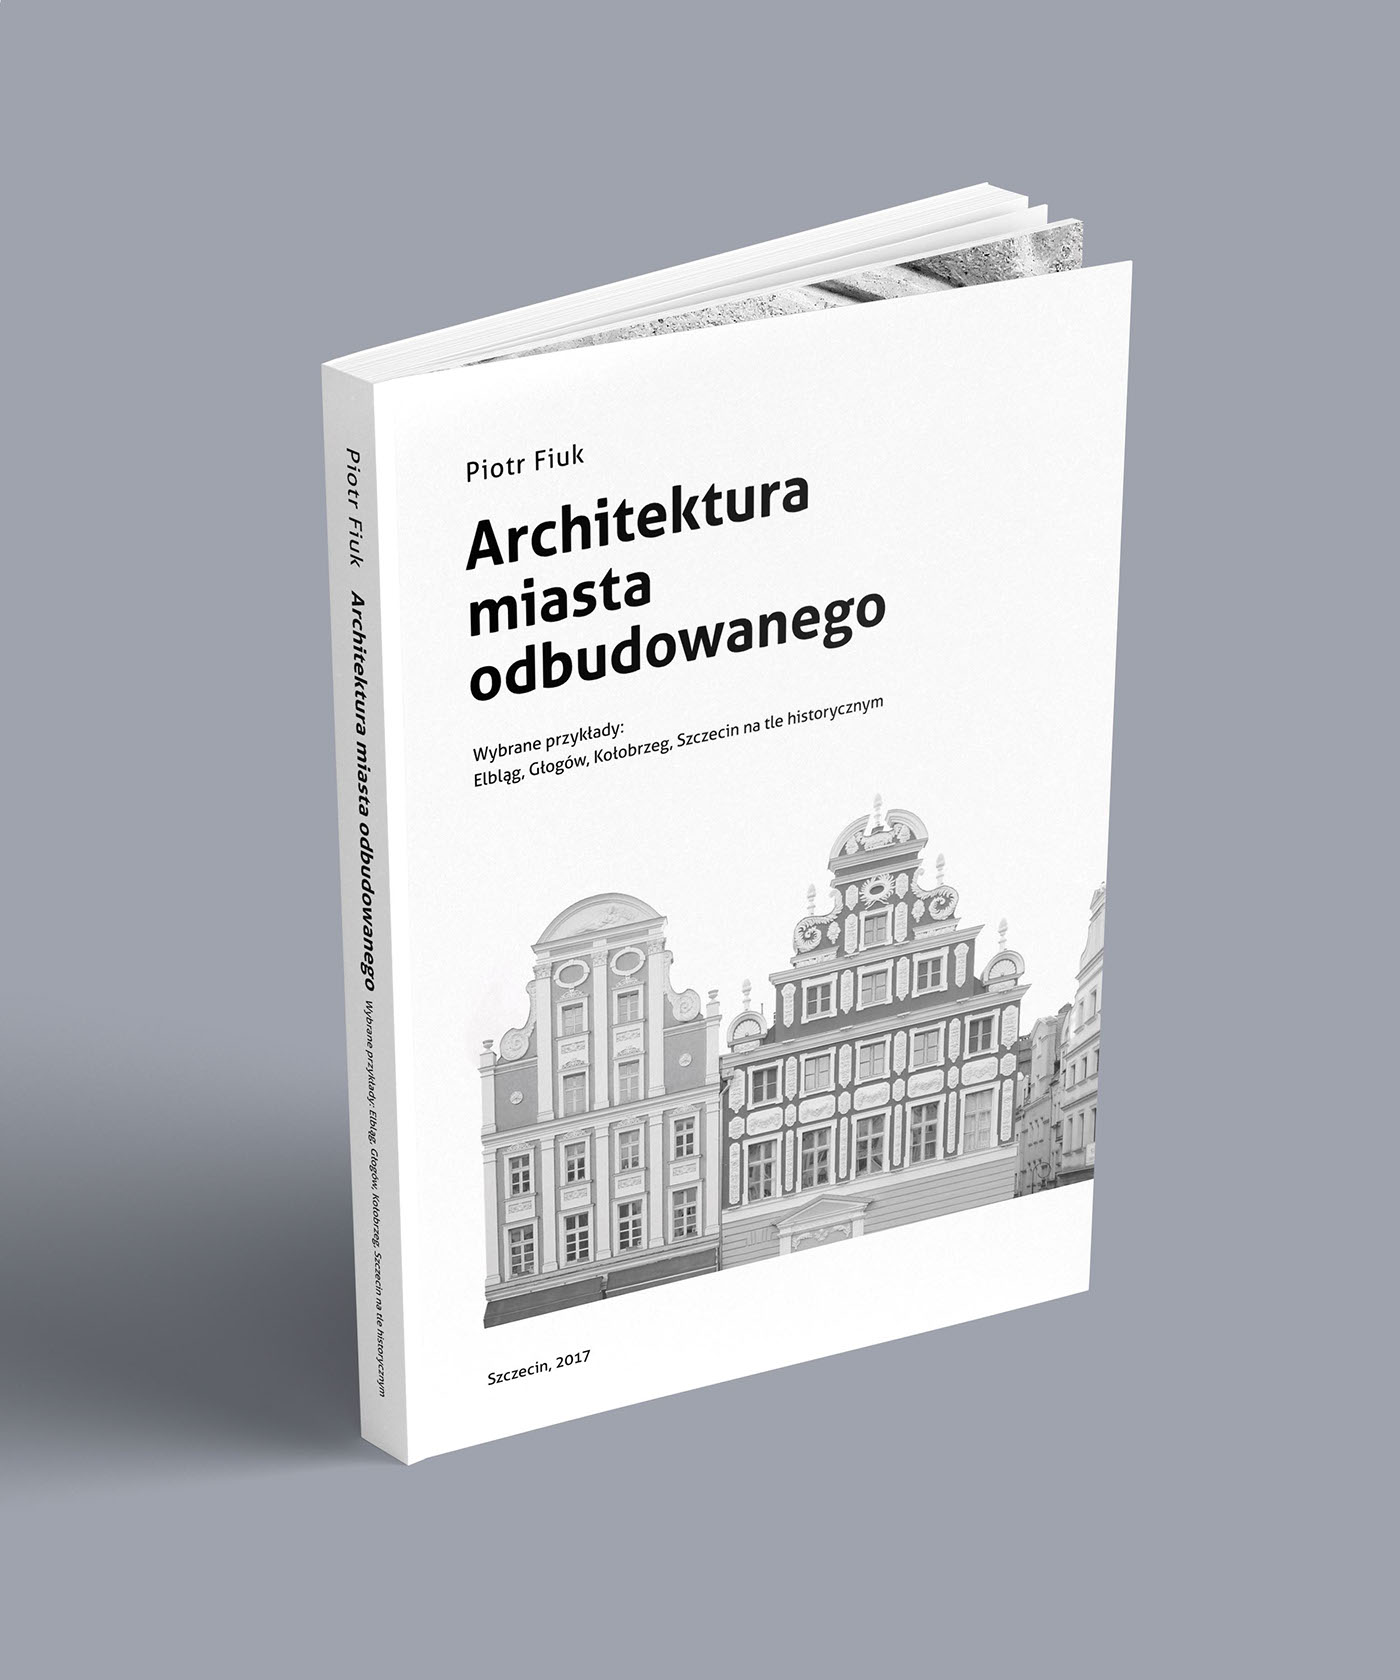 architecture minimal design book cover Photography  black & white Szczecin graphic design 